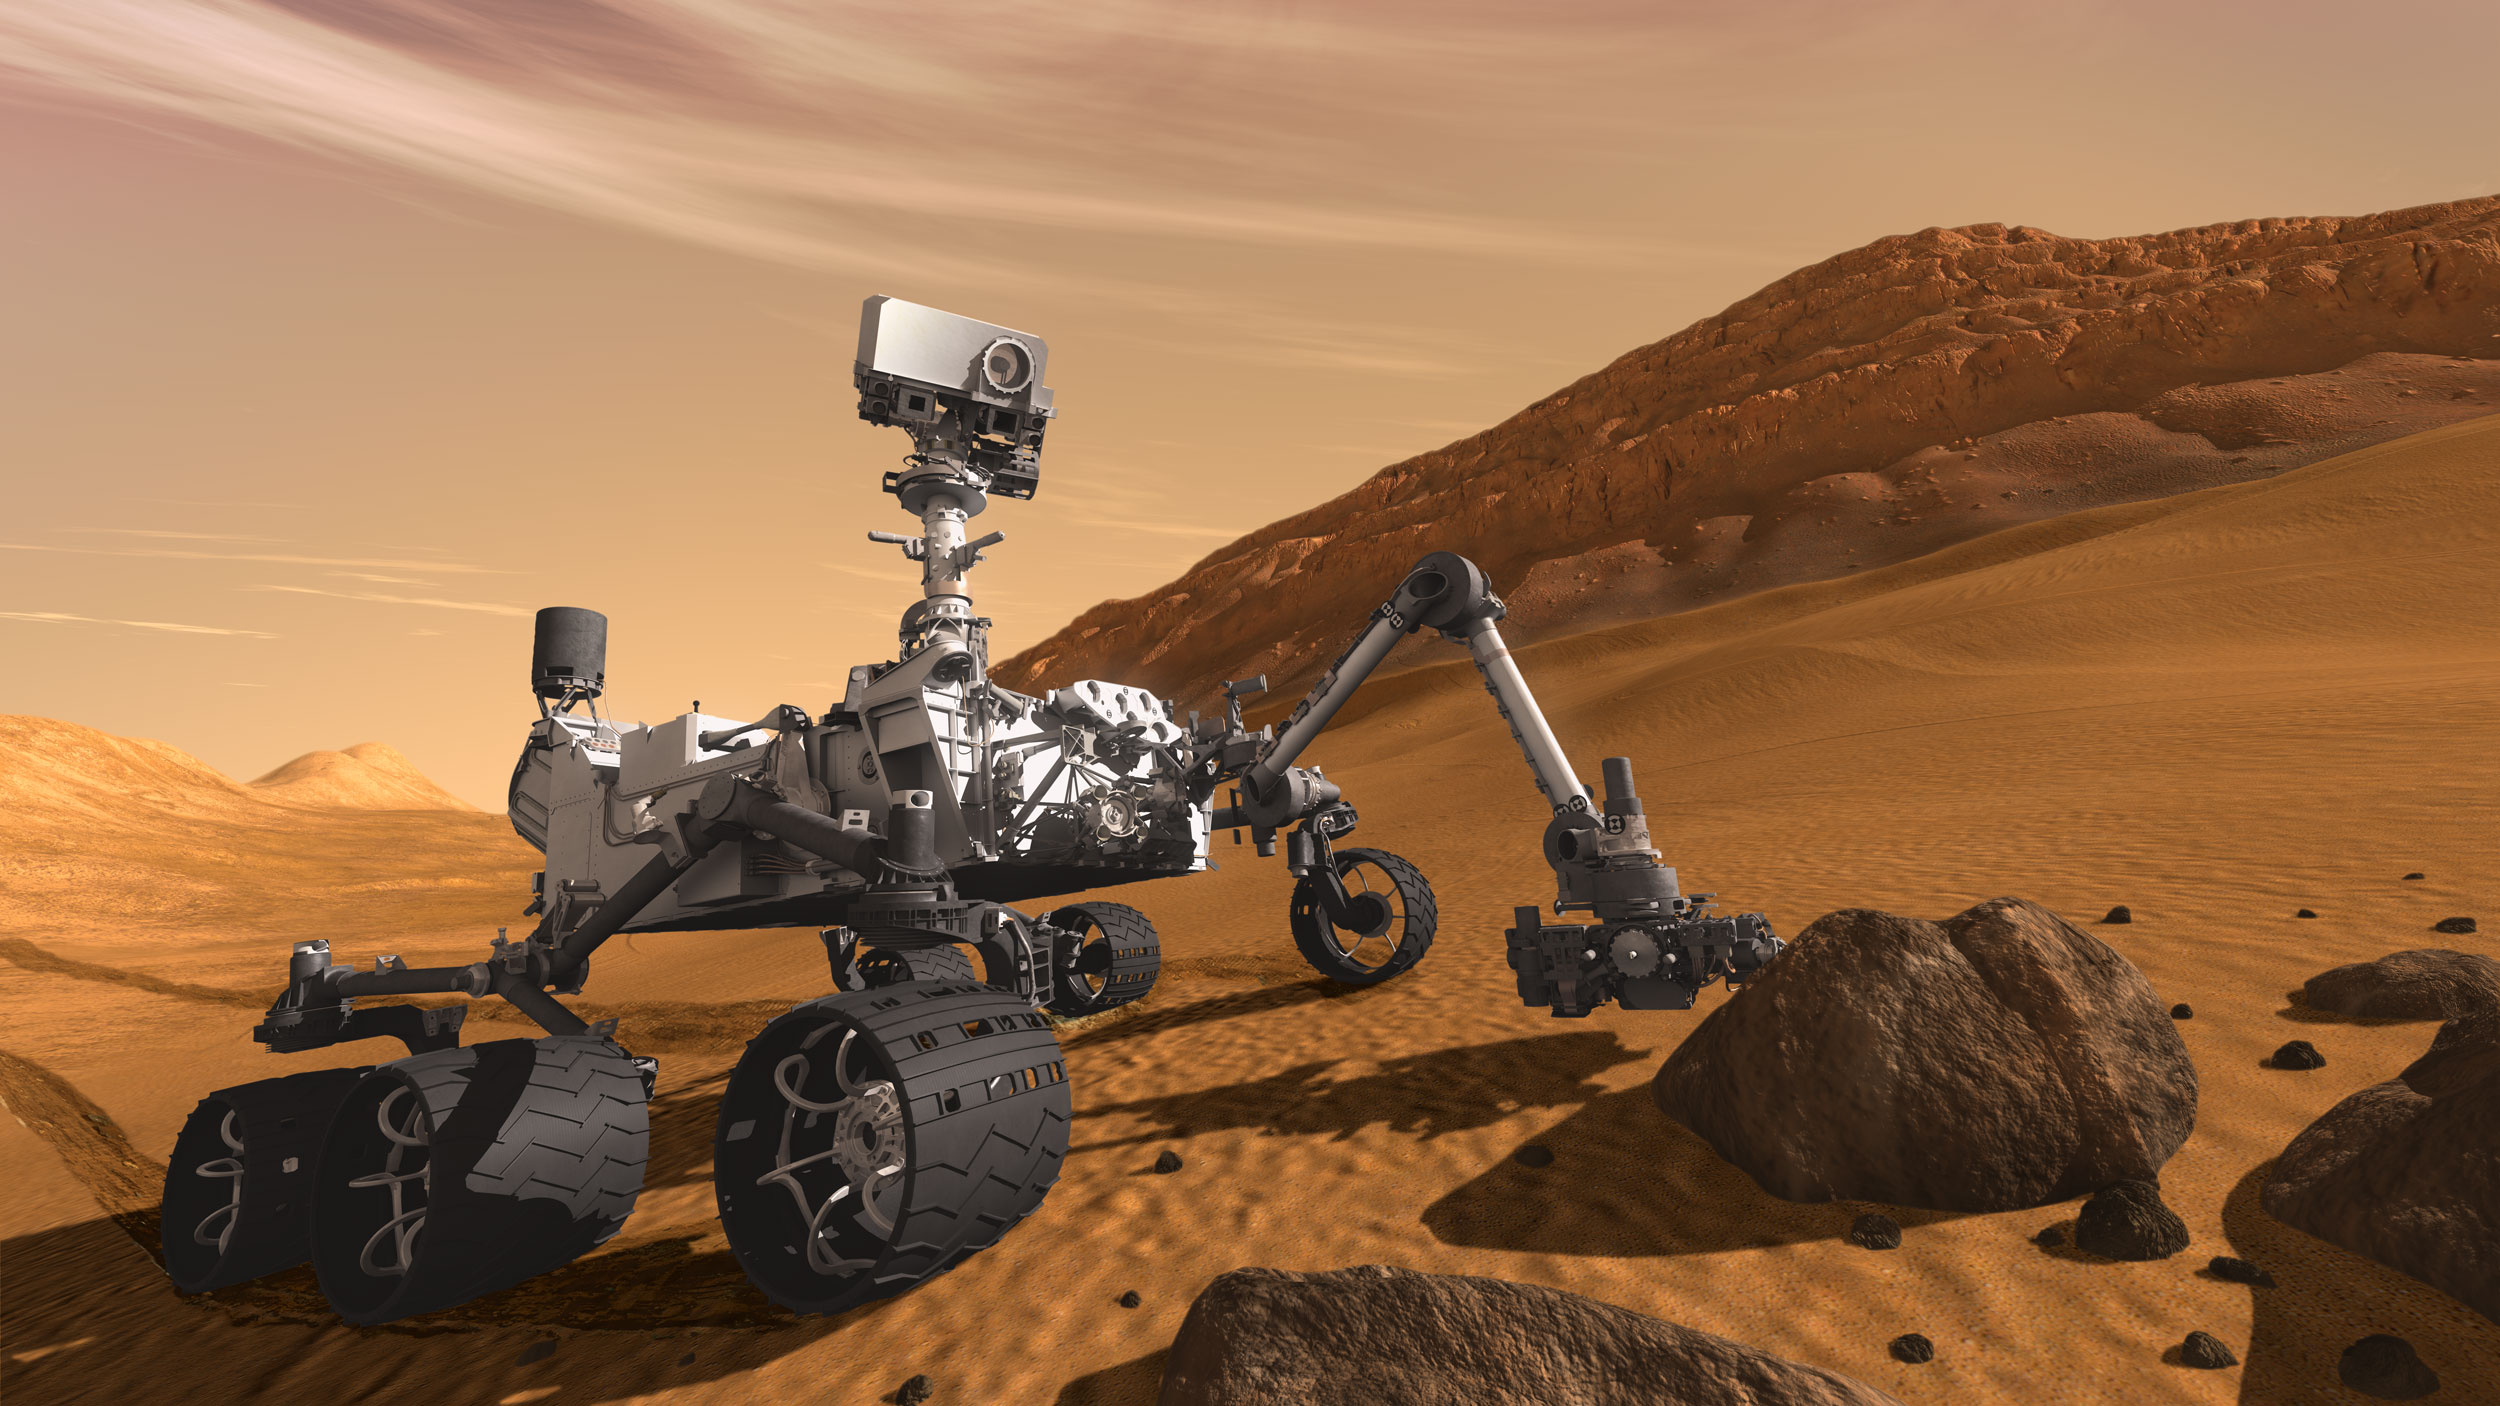 Curiosity: The Next Mars Rover